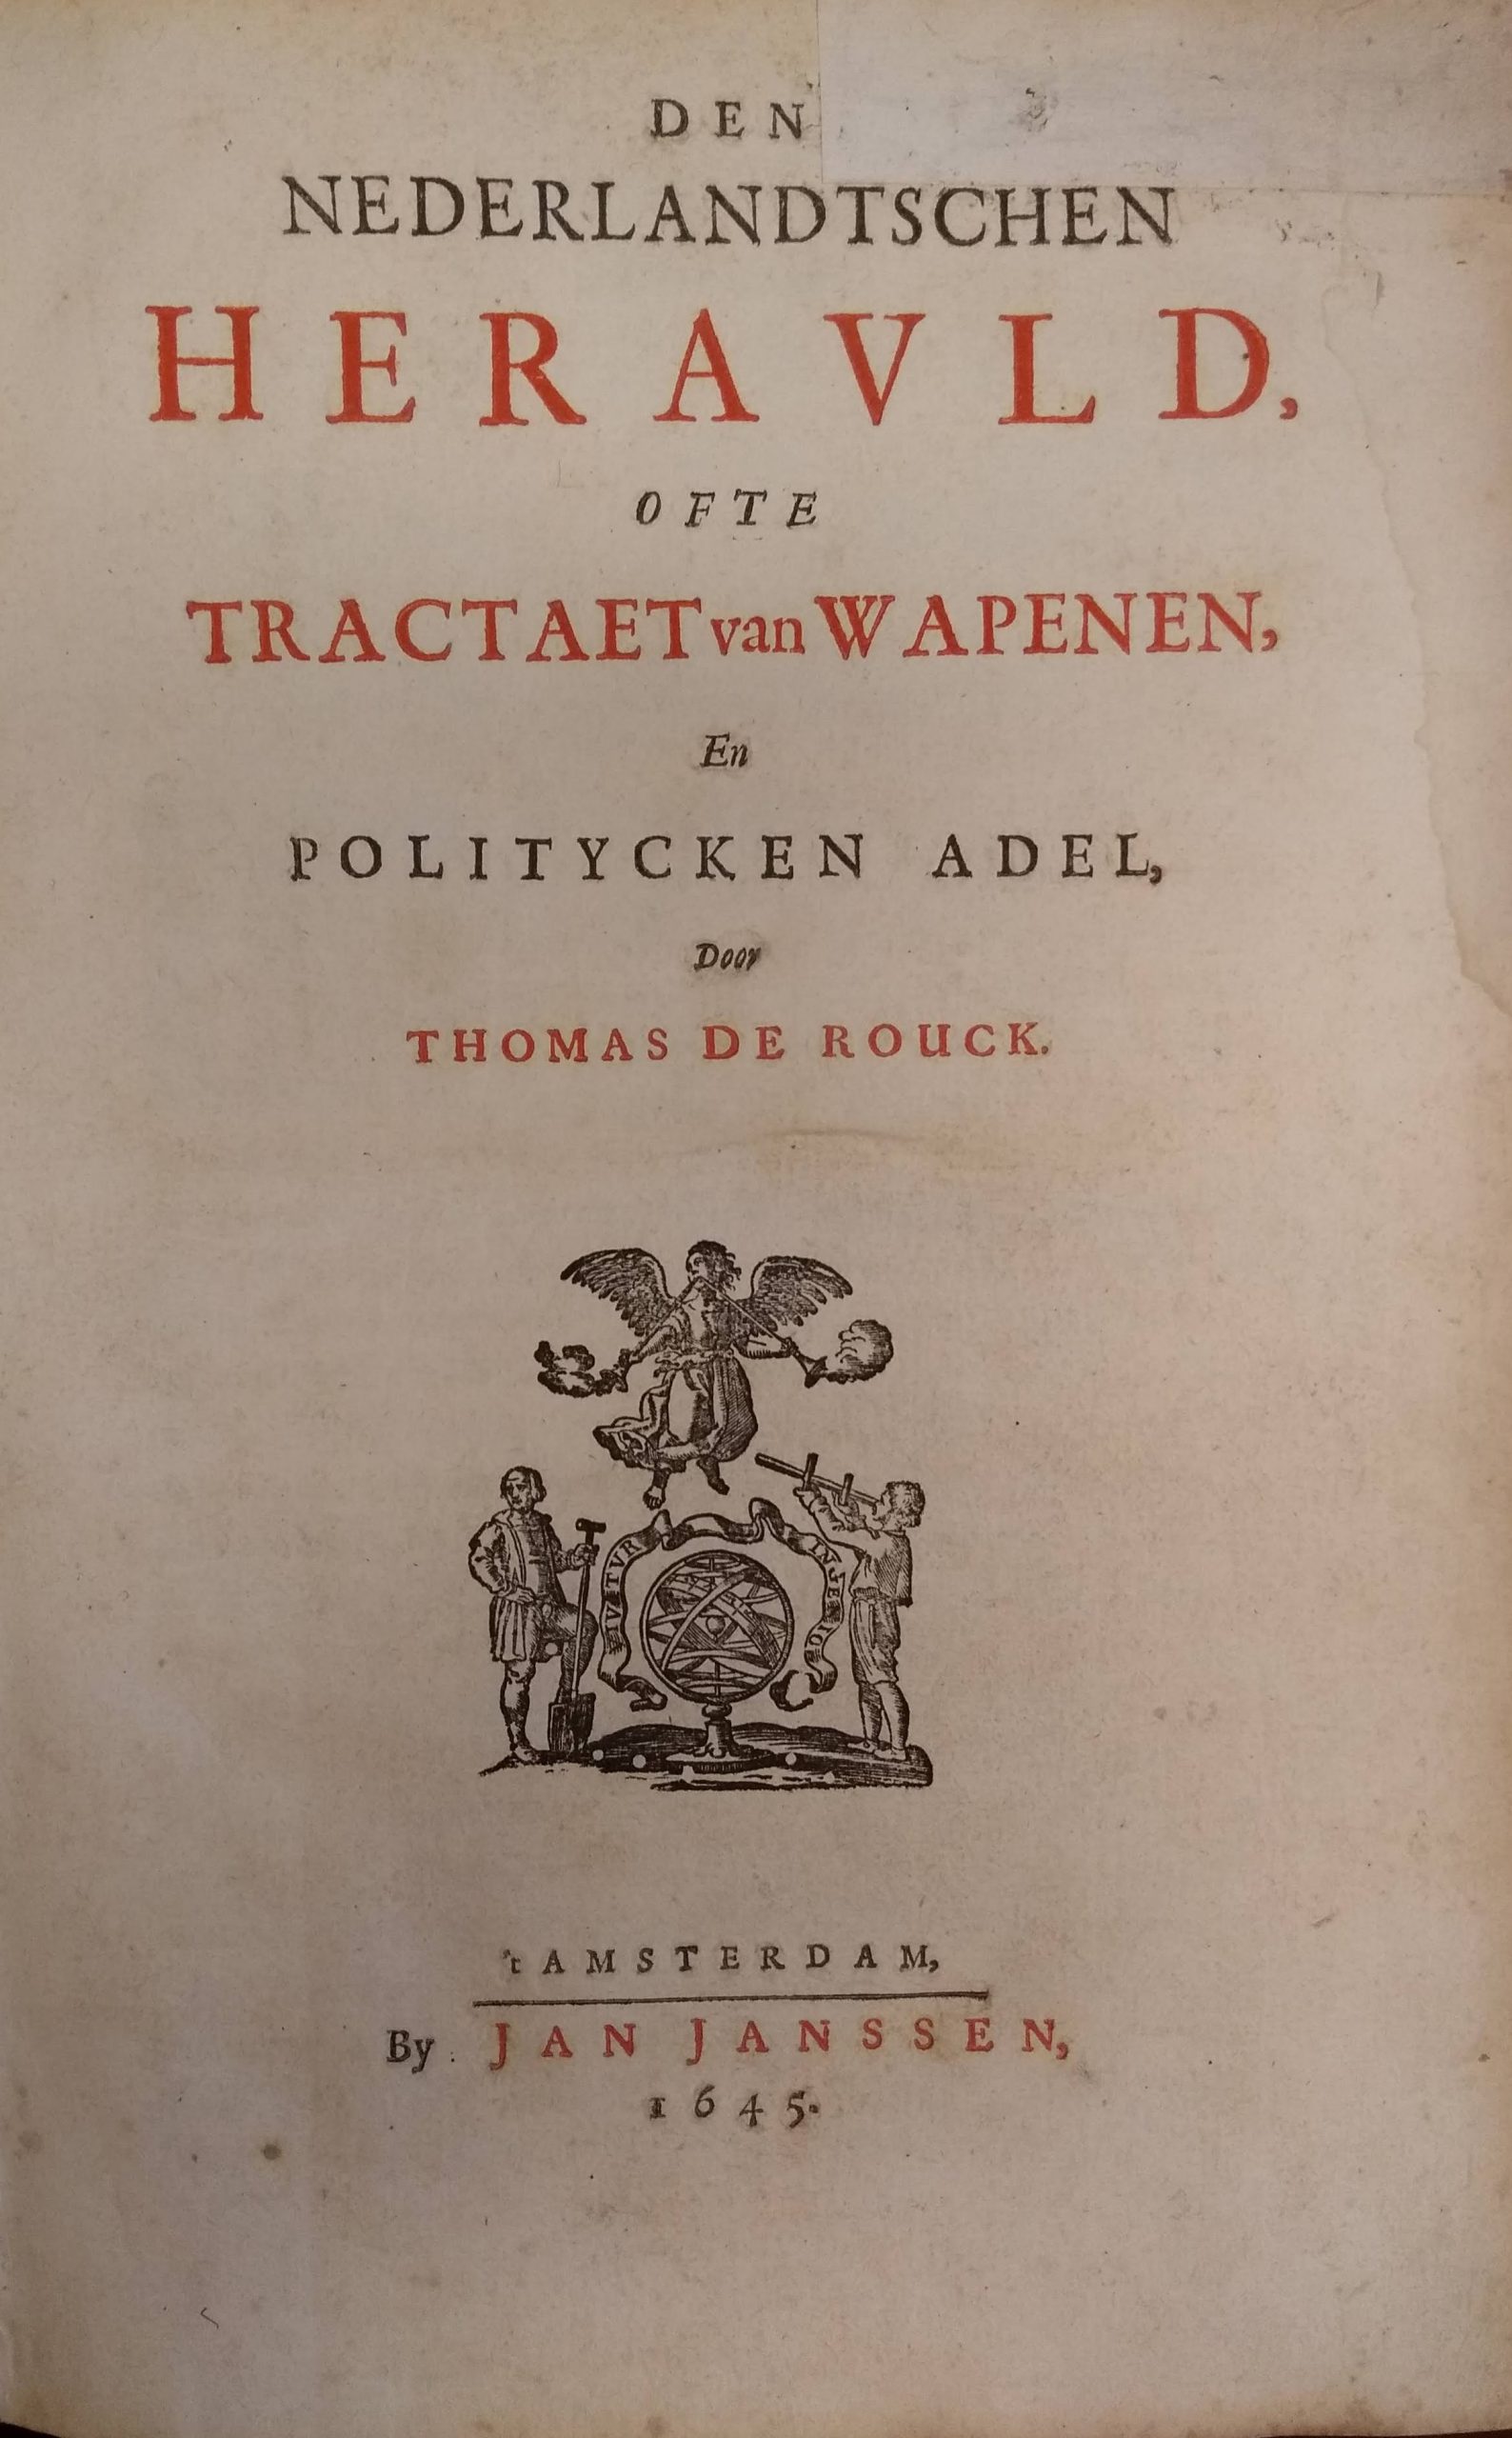 Rouck, Thomas de  Den Nederlandtschen Herauld ofte Tractaet van Wapenen en politycken adel.